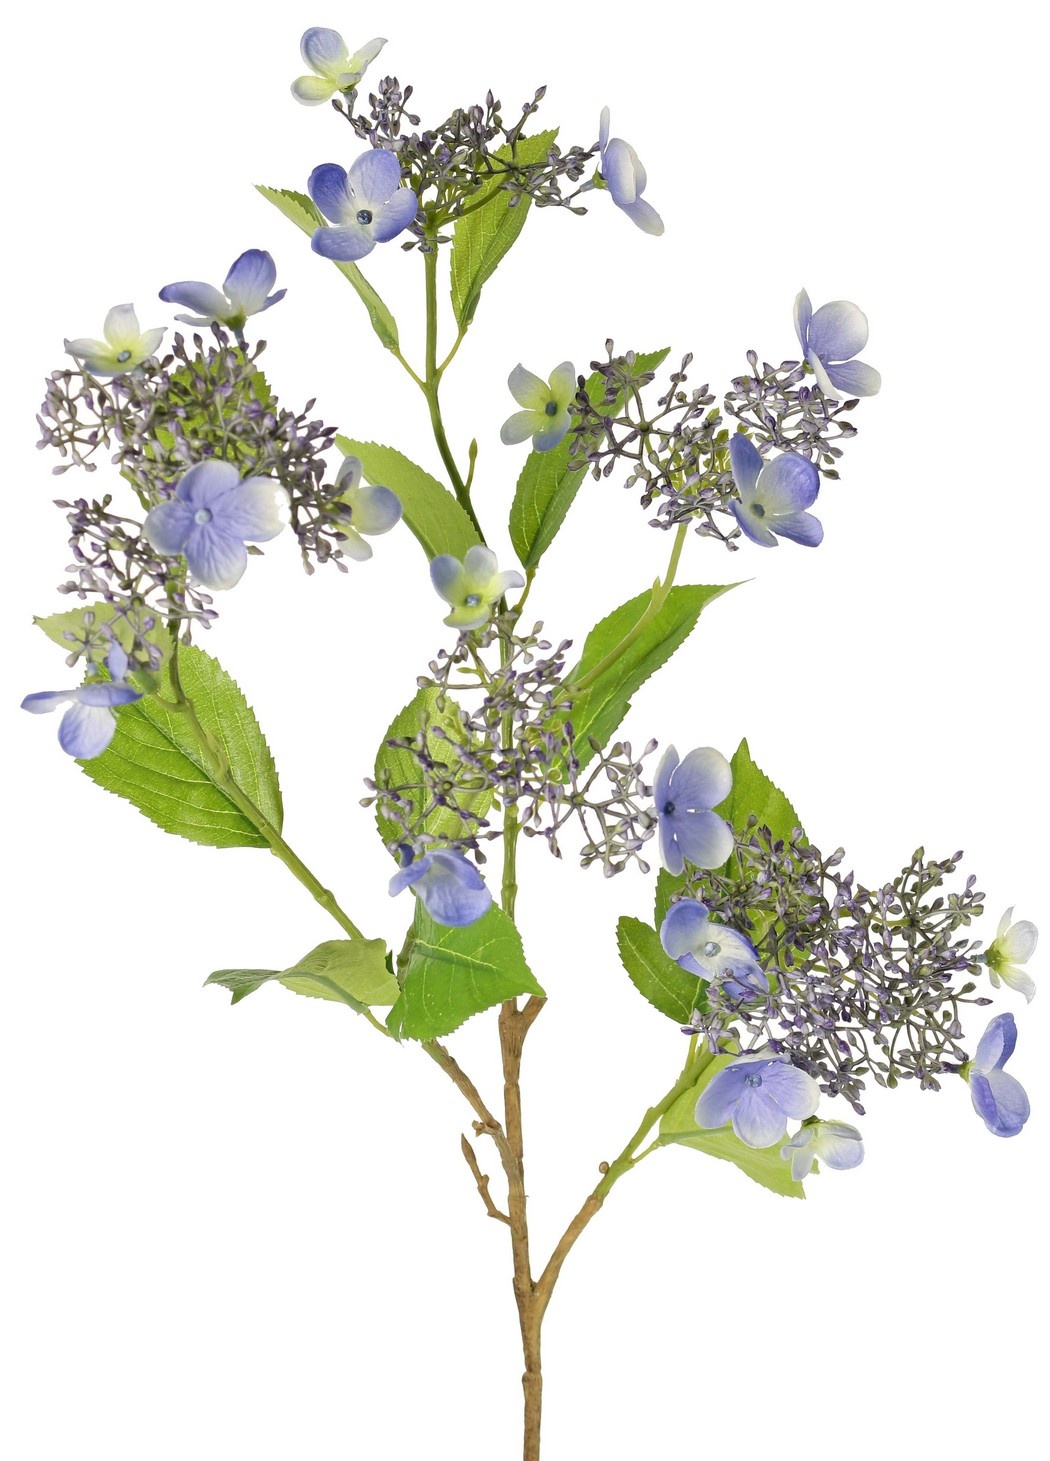 Hortensia (Hydrangea) 'Garden Joy' de 3 ramas, con 5 capullos y racimos de flores, 13 hojas, 78 cm